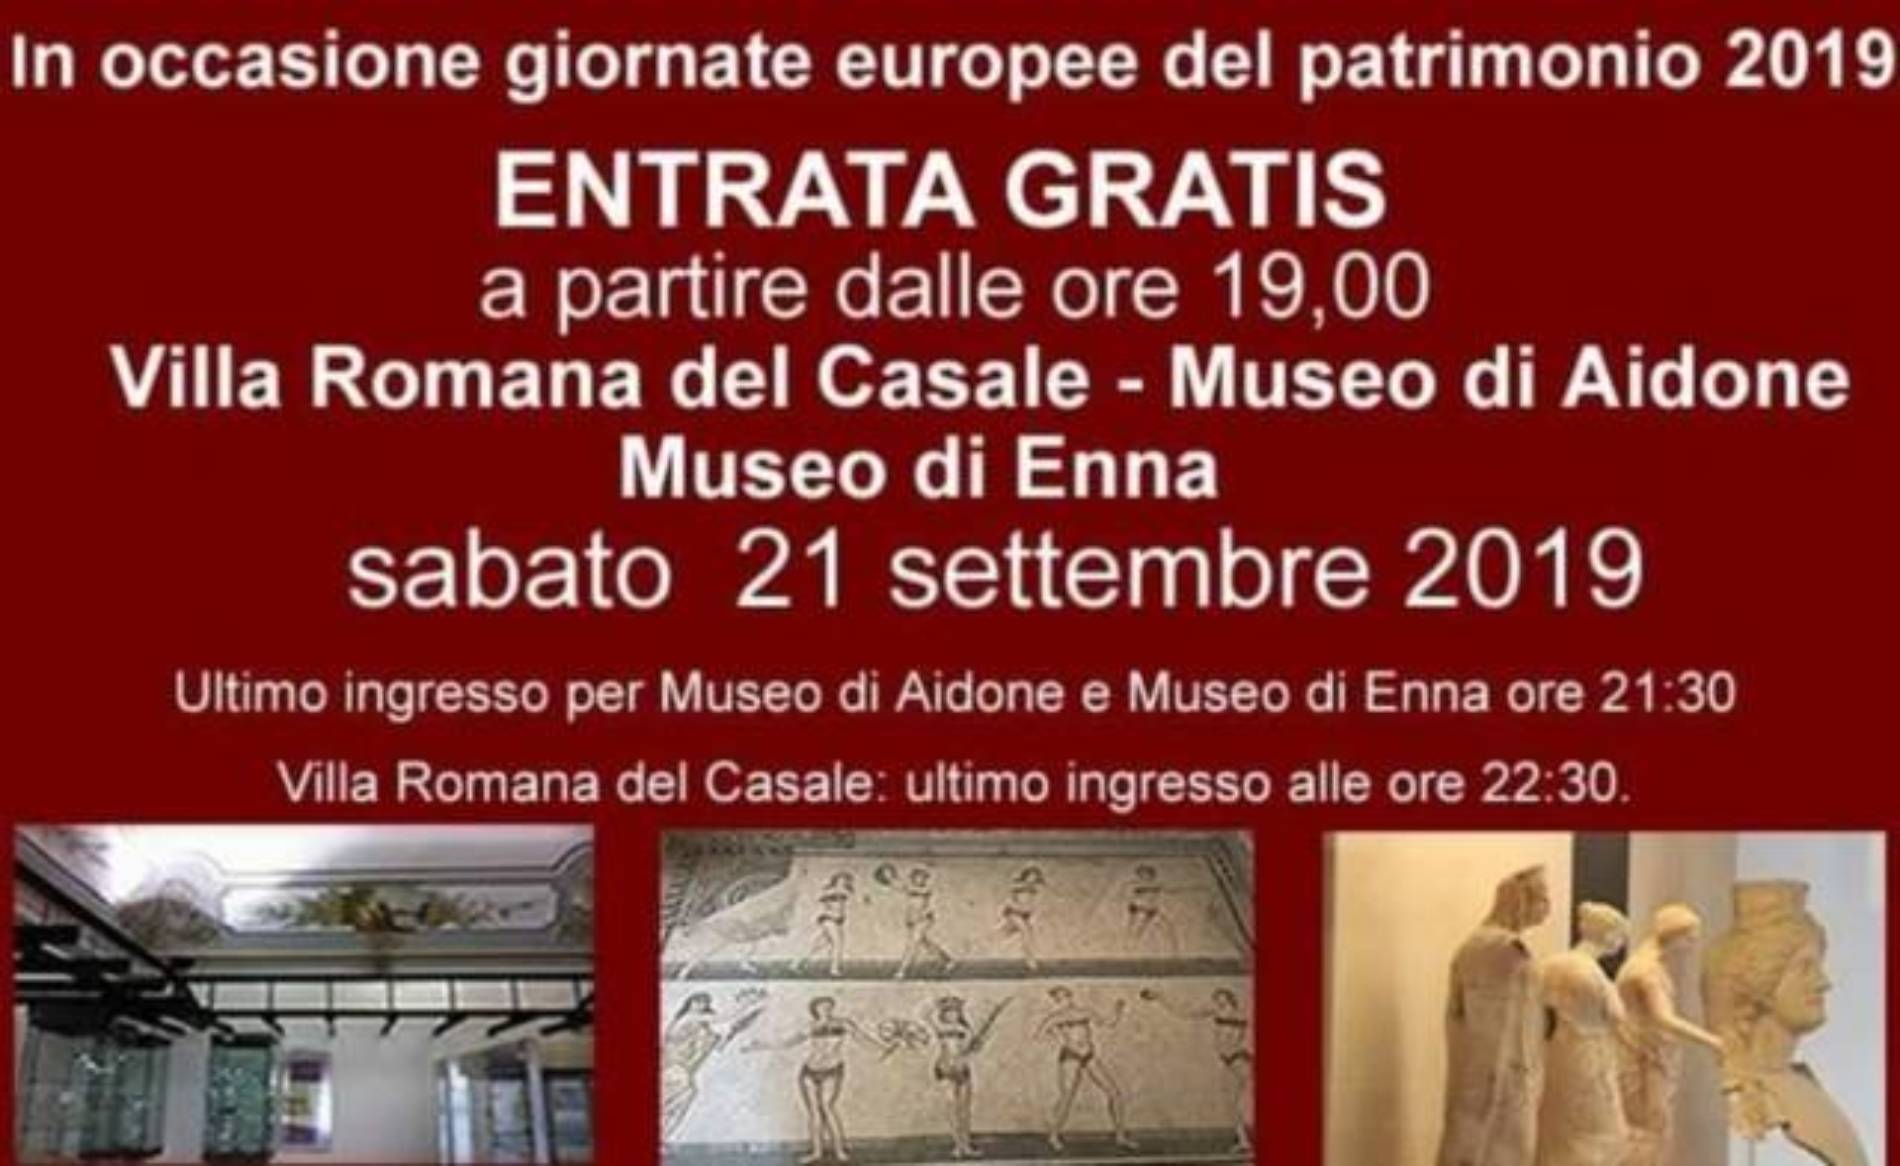 Il 21 settembre a partire dalle ore 19.00 saranno aperti gratuitamente la Villa Romane del Casale e i Musei di Aidone e Enna